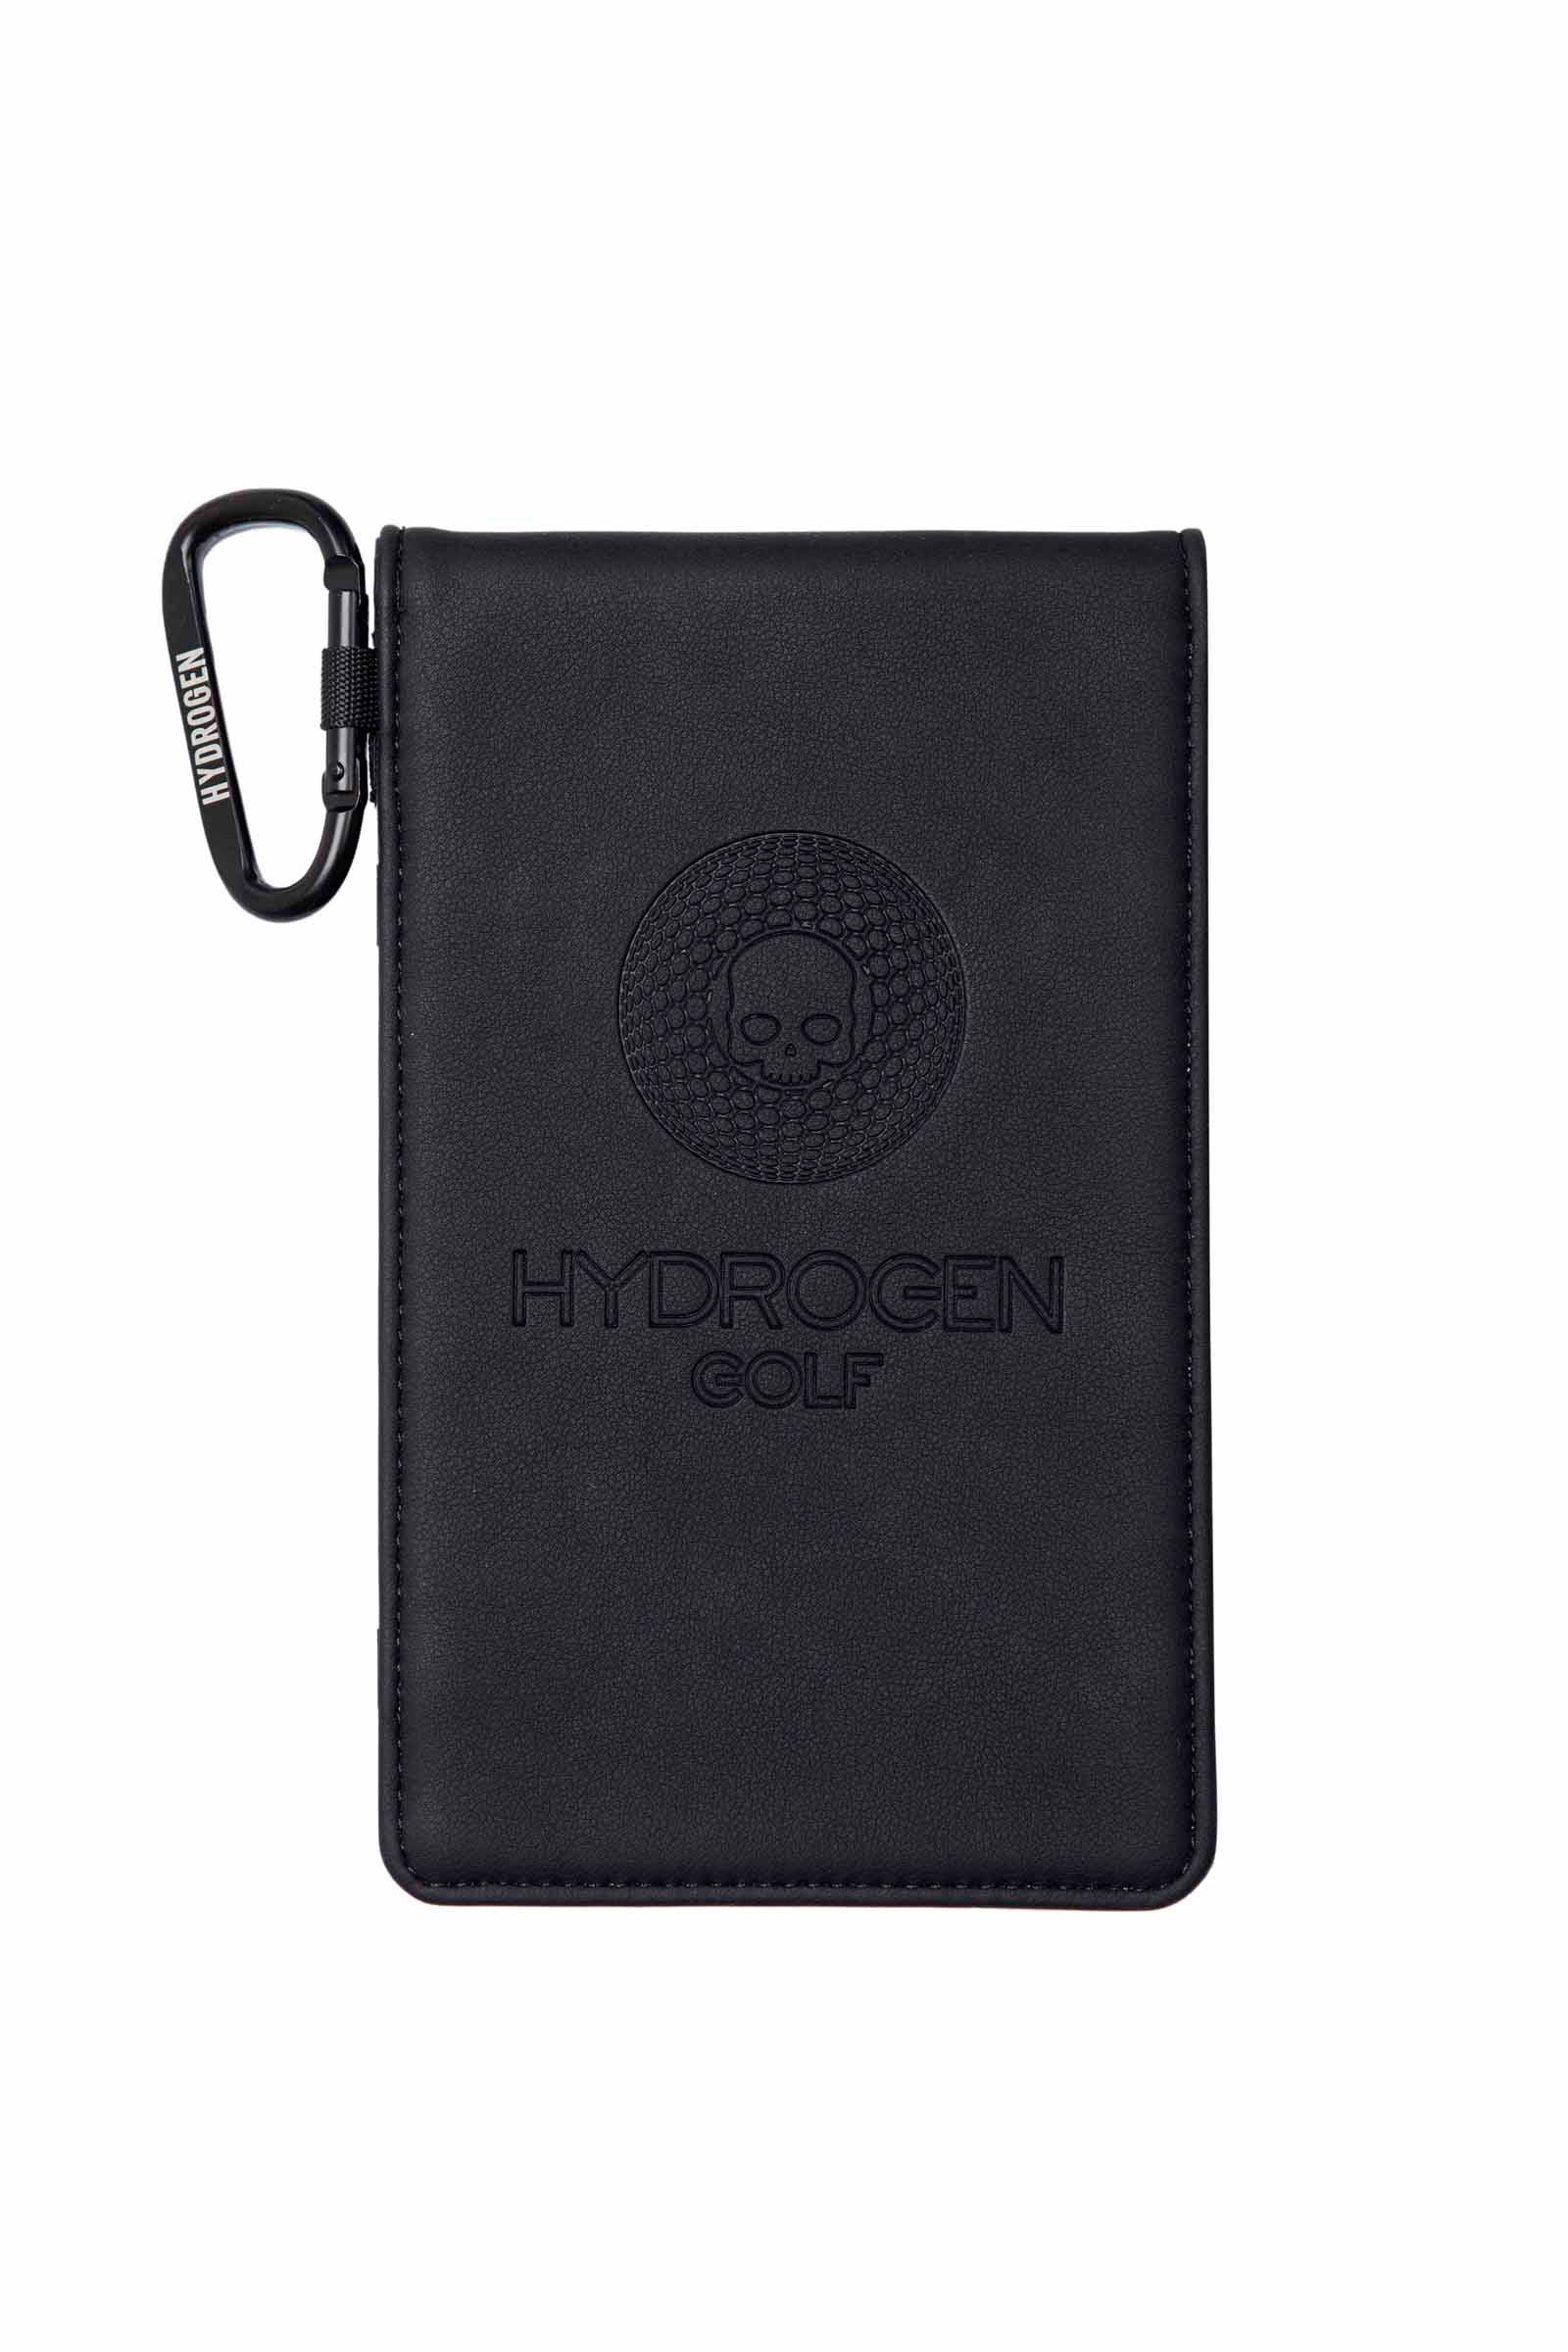 SCORE CARD - BLACK - Hydrogen - Luxury Sportwear